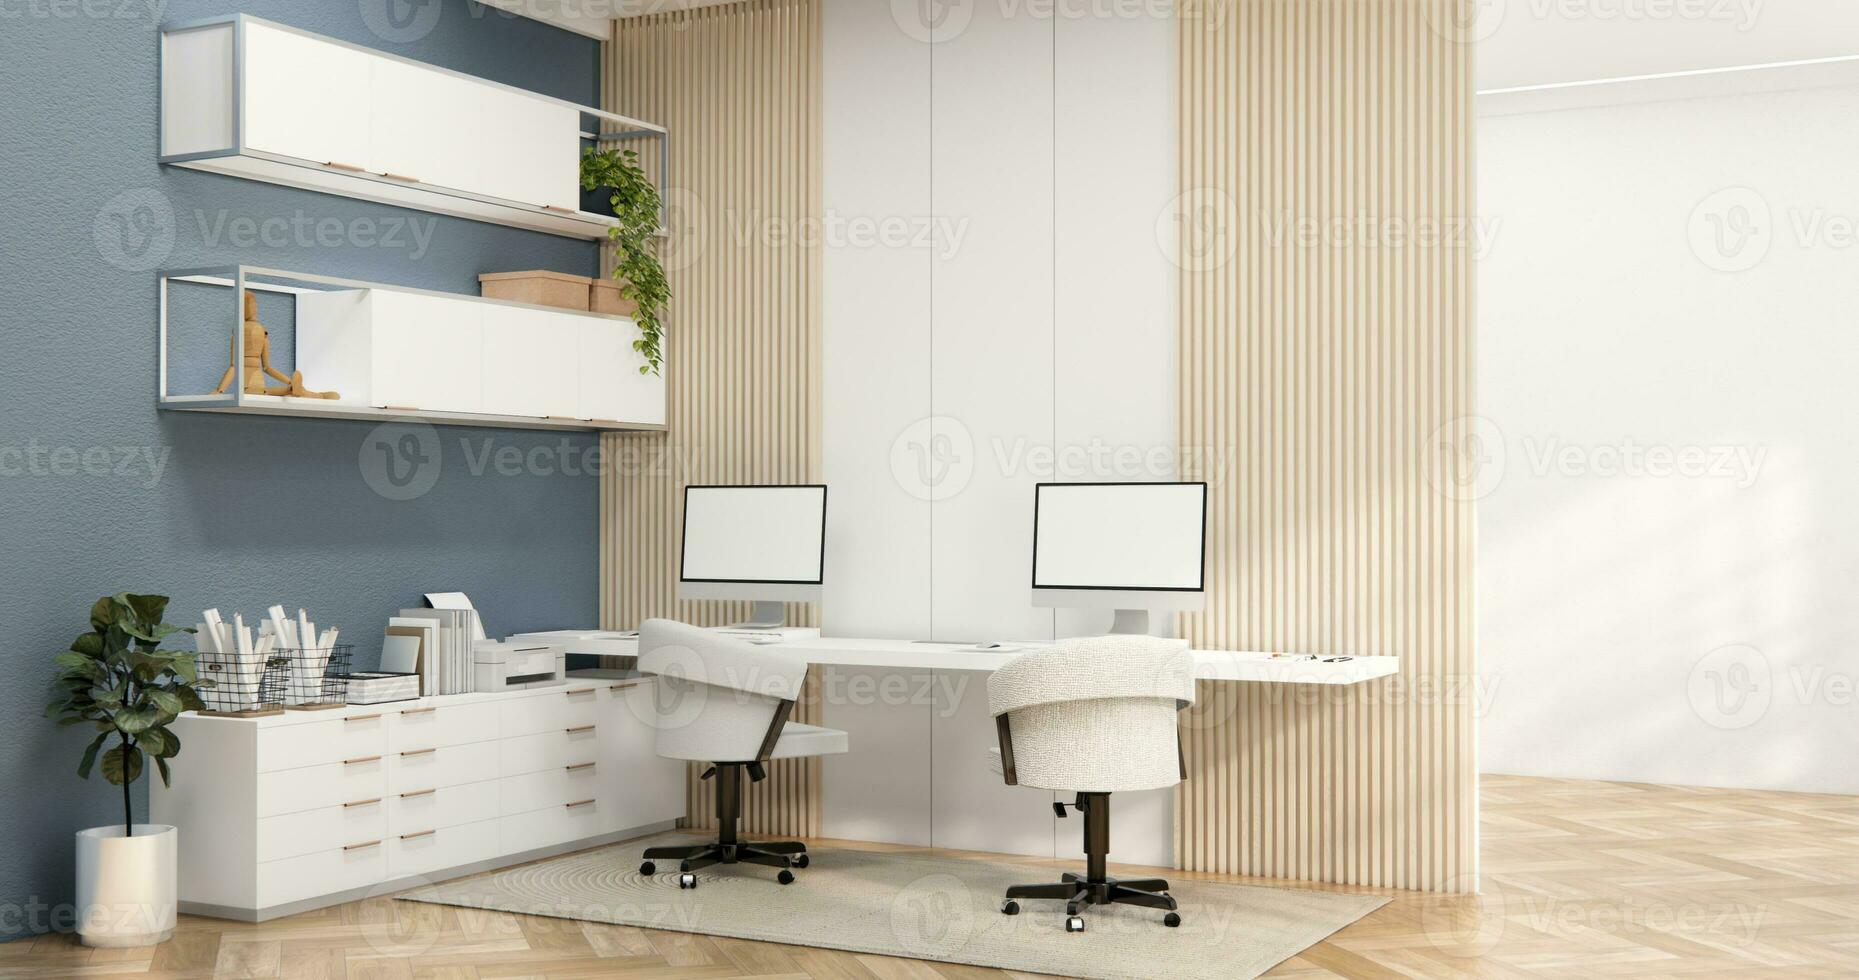 das Innere Computer und Büro Werkzeuge auf Schreibtisch Zimmer Muji Stil Innere Design. foto